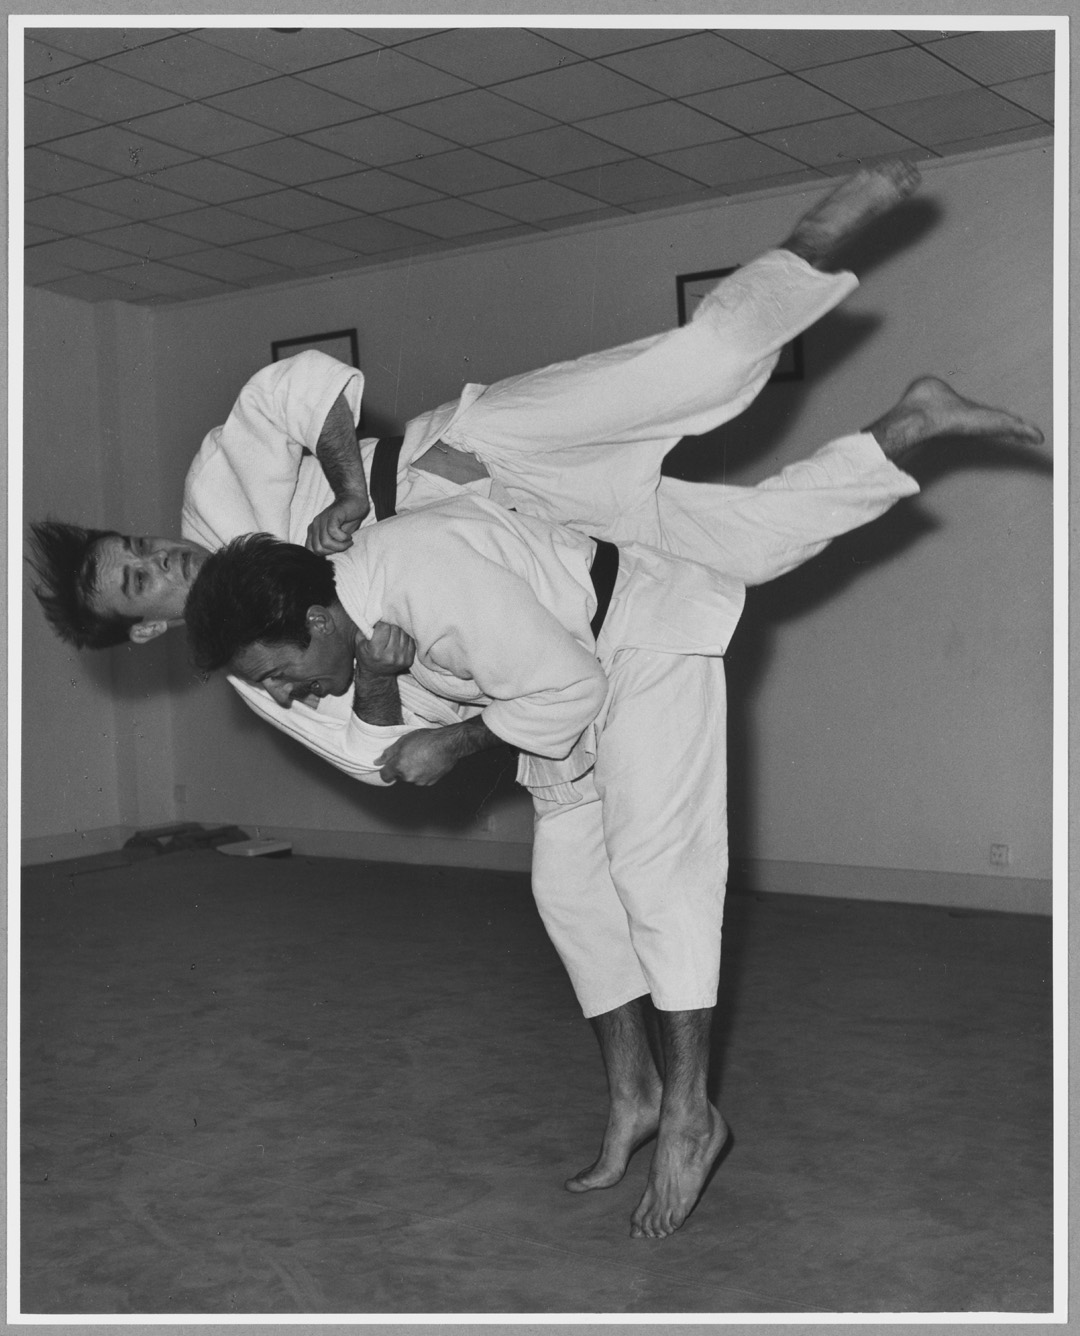 Harry Shunk, "Yves Klein : Démonstration de judo au Japon", 1959